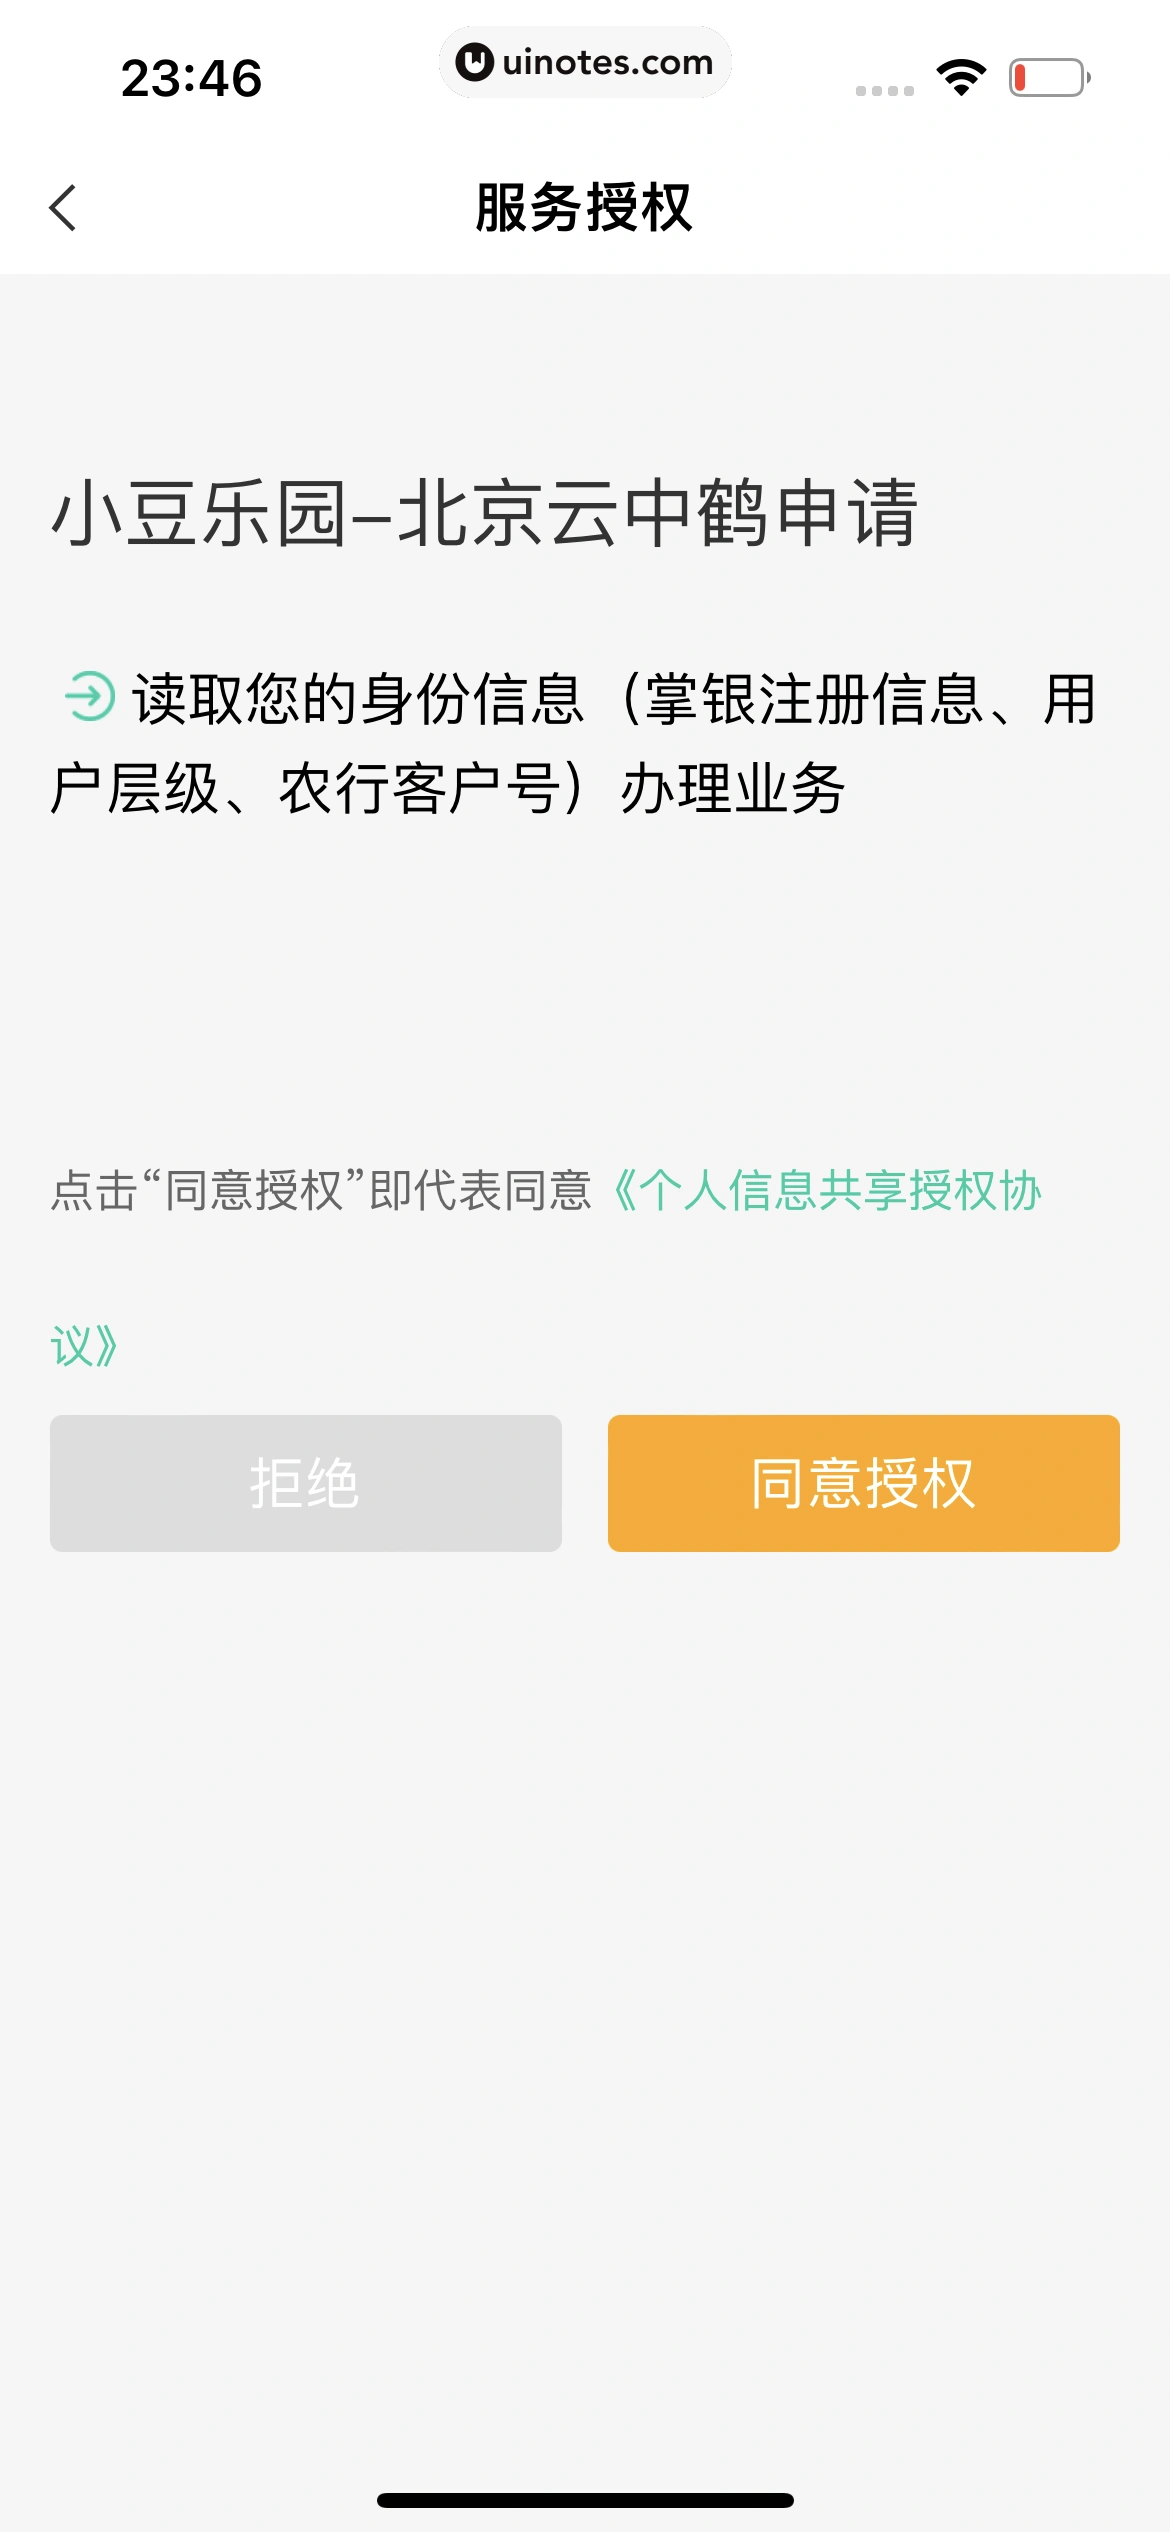 中国农业银行 App 截图 165 - UI Notes